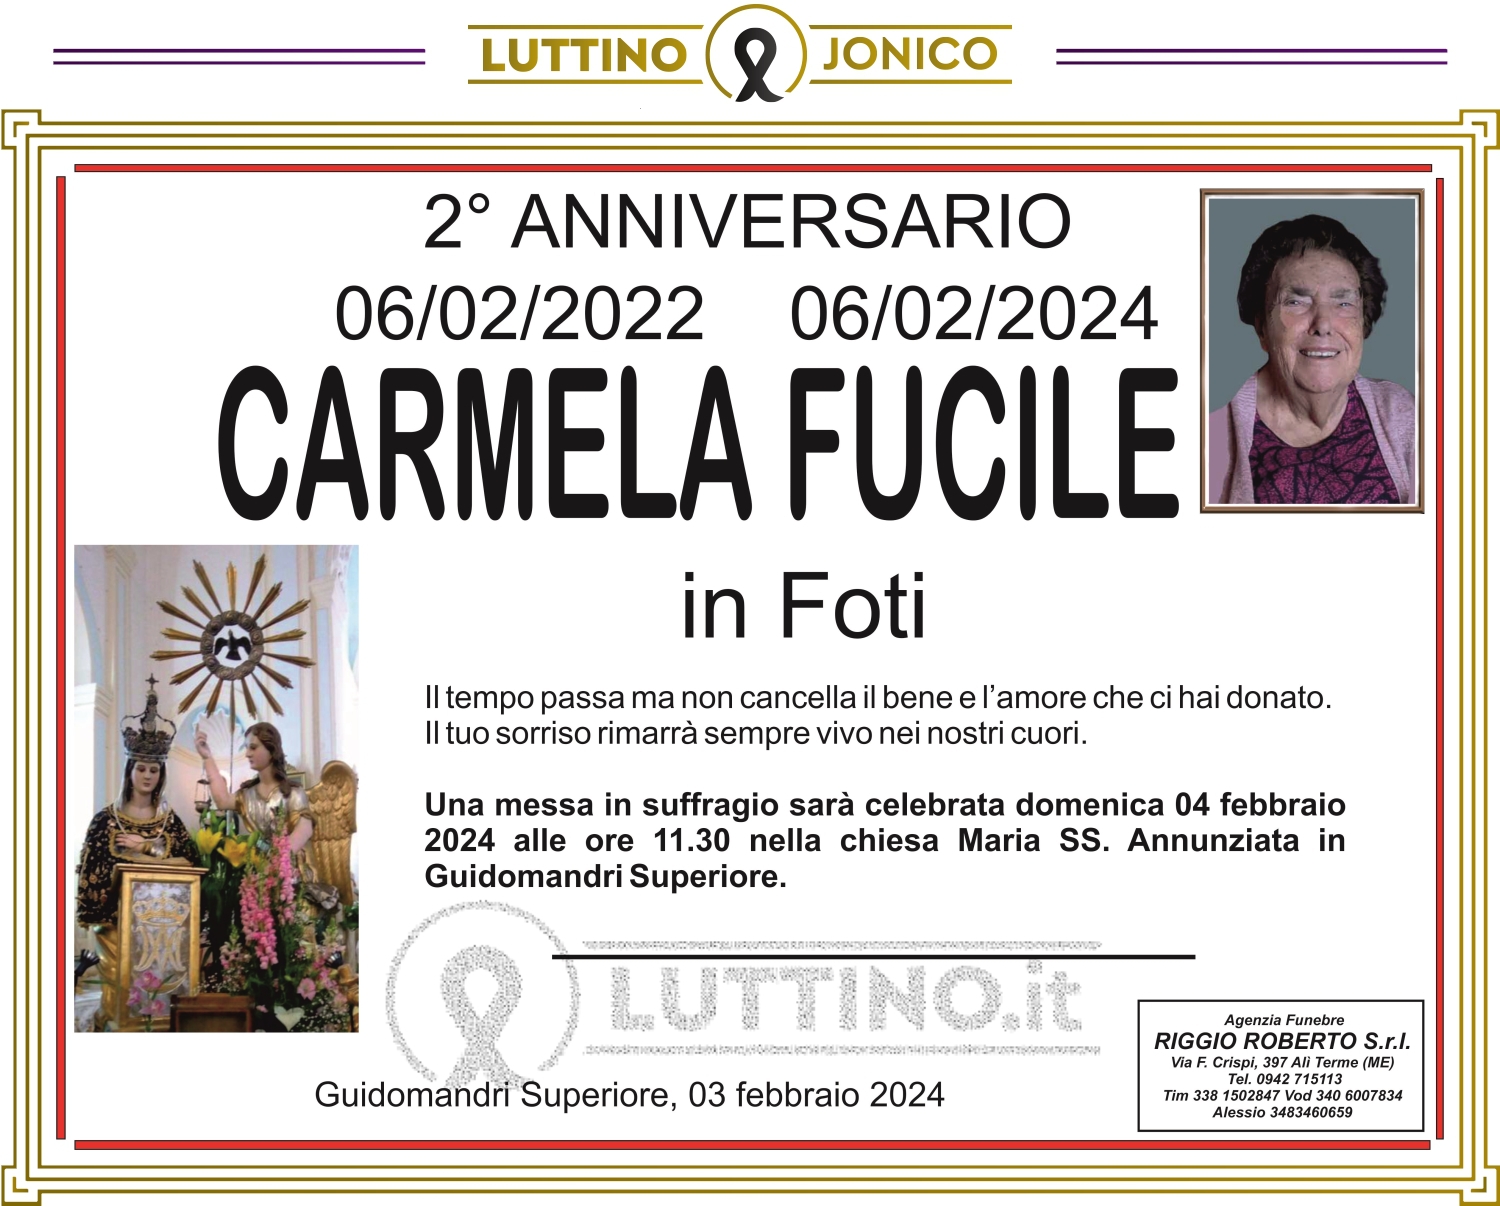 Carmela Fucile